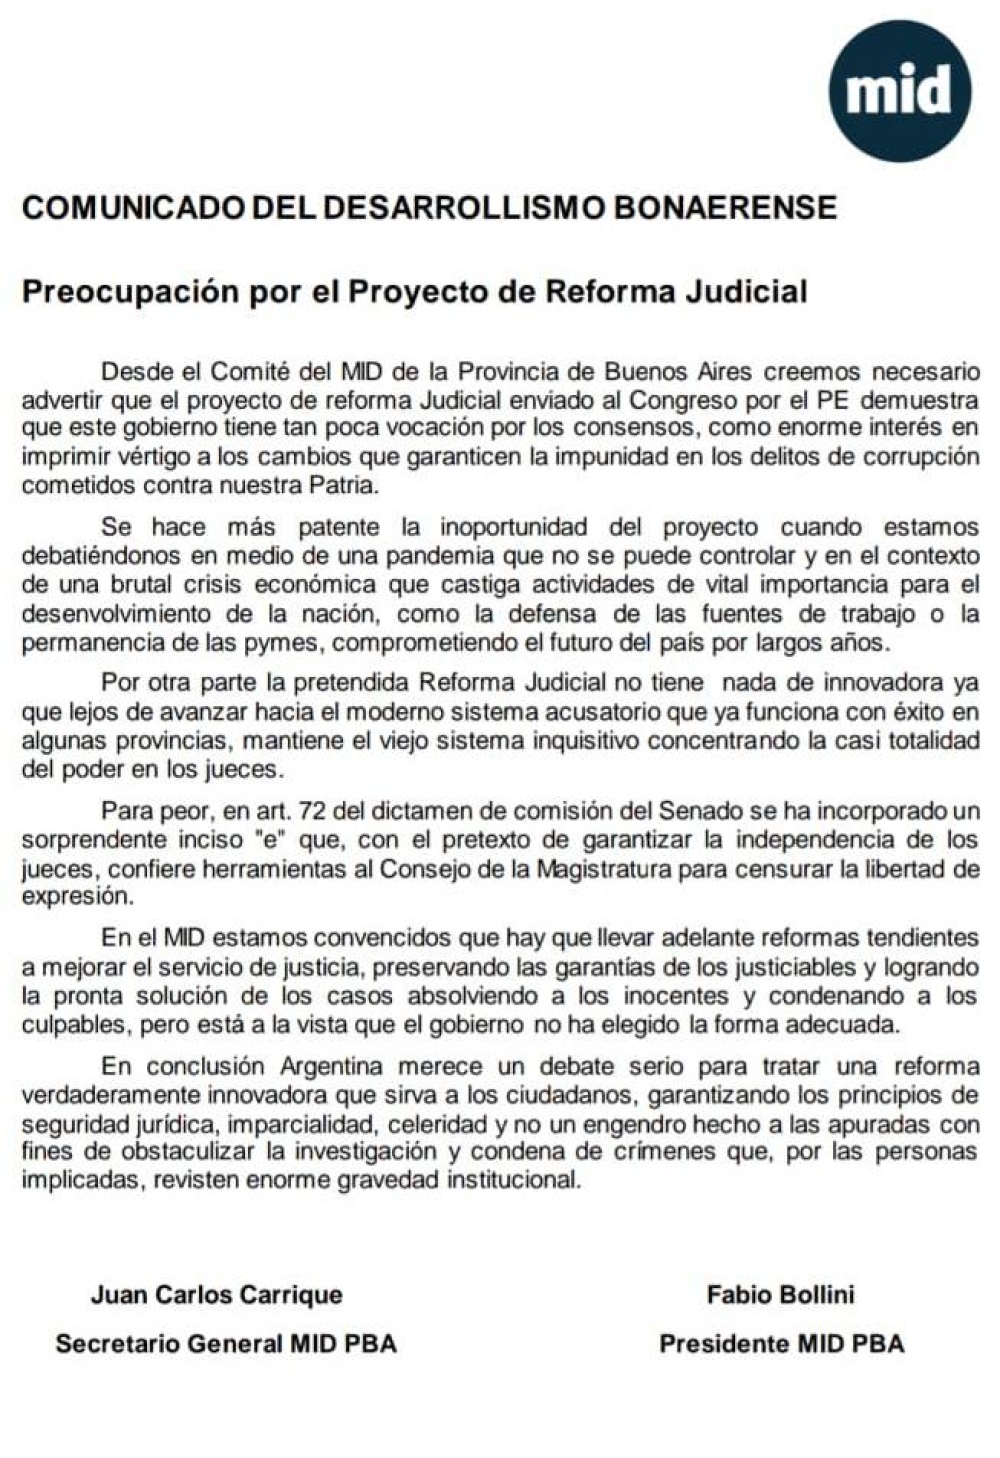 EL MID SE PRONUNCIÓ EN CONTRA DE LA REFORMA JUDICIAL IMPULSADA POR EL GOBIERNO